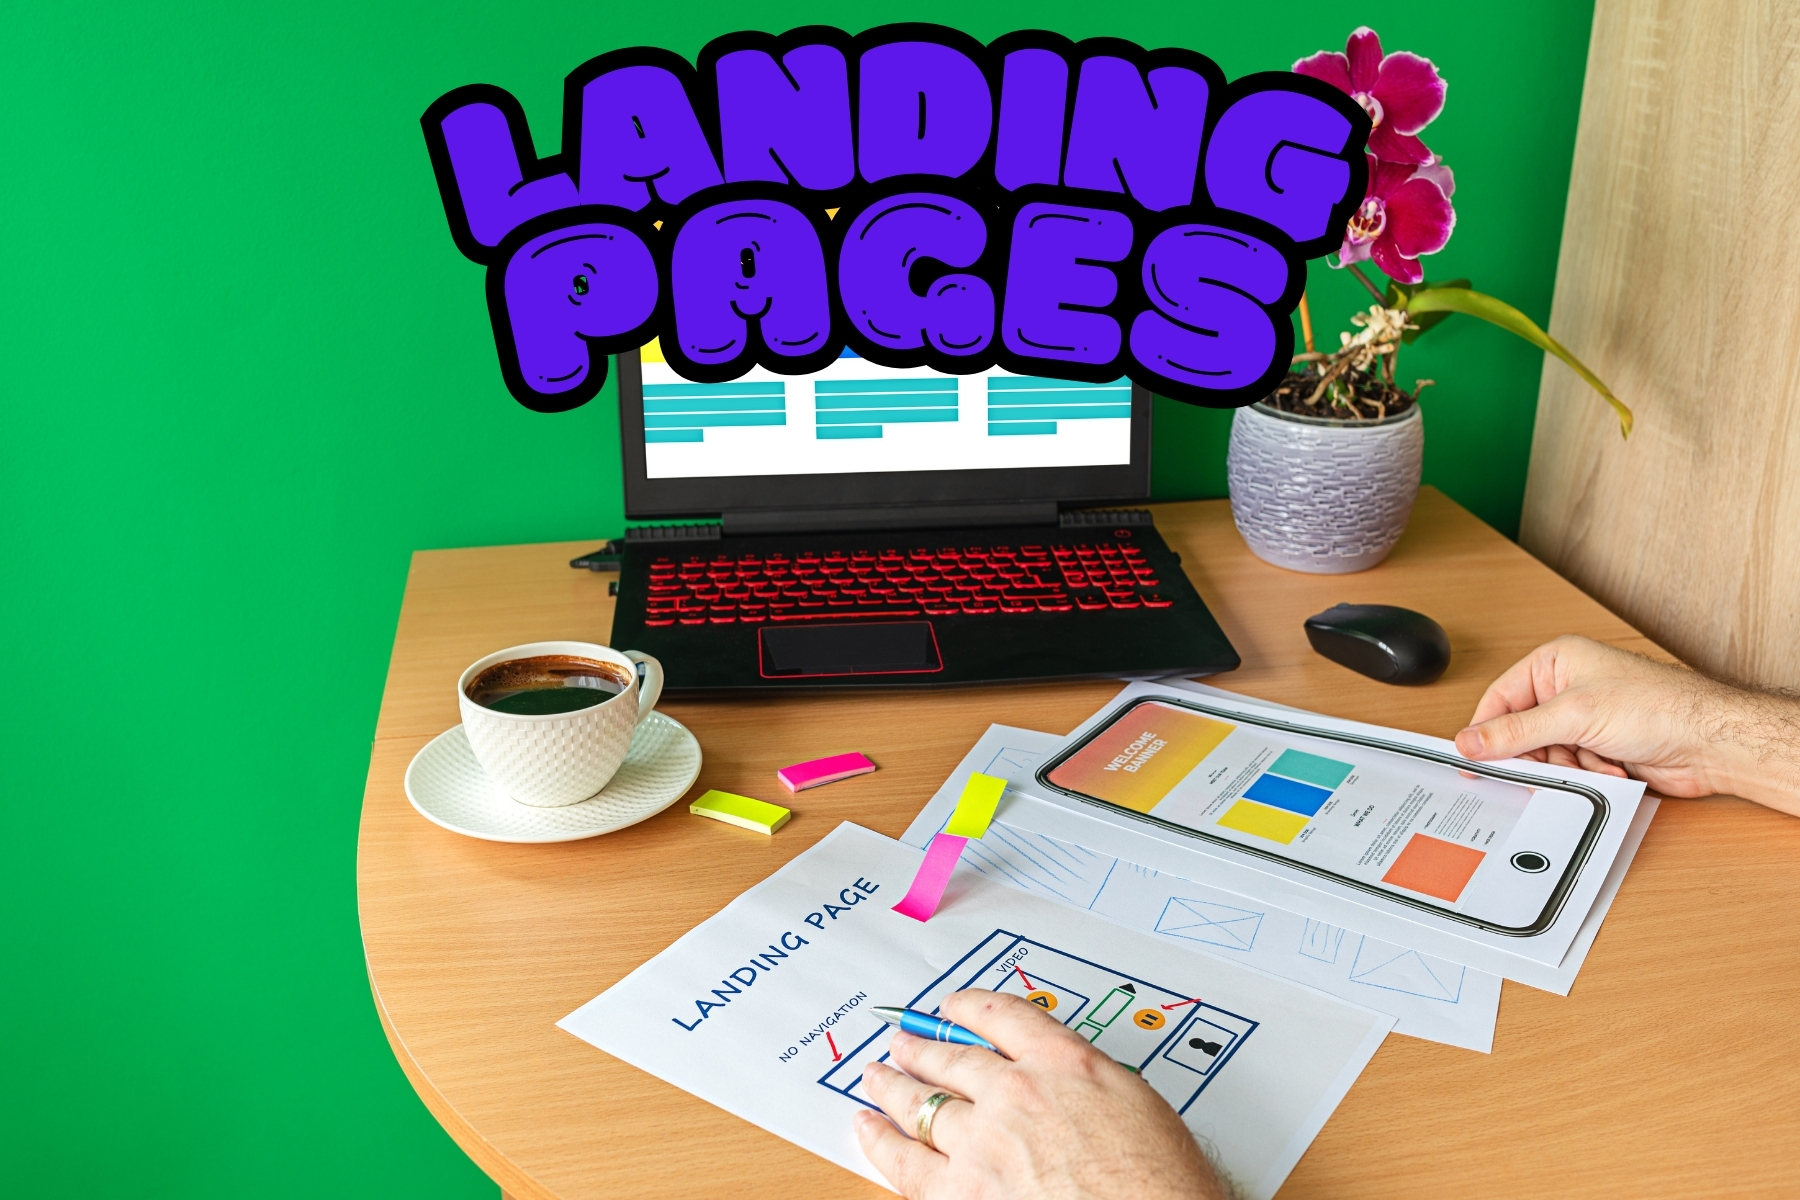 Descubra o que é uma landing page e como criar uma eficiente. Aprenda a aumentar a conversão com dicas de SEO, design e otimização contínua.